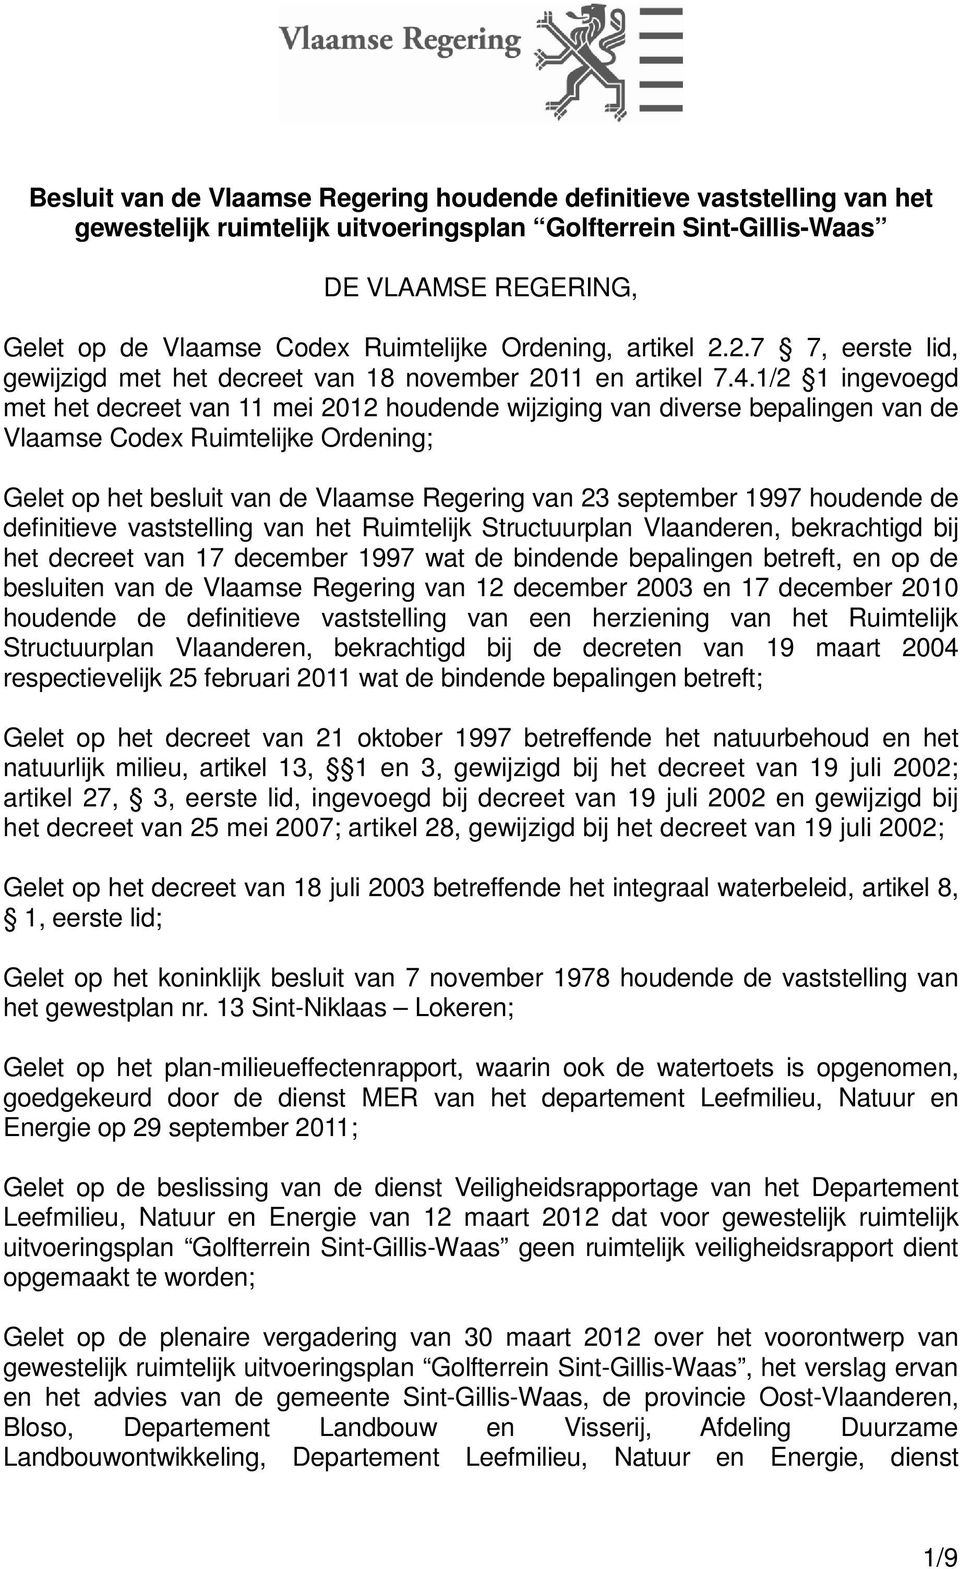 1/2 1 ingevoegd met het decreet van 11 mei 2012 houdende wijziging van diverse bepalingen van de Vlaamse Codex Ruimtelijke Ordening; Gelet op het besluit van de Vlaamse Regering van 23 september 1997